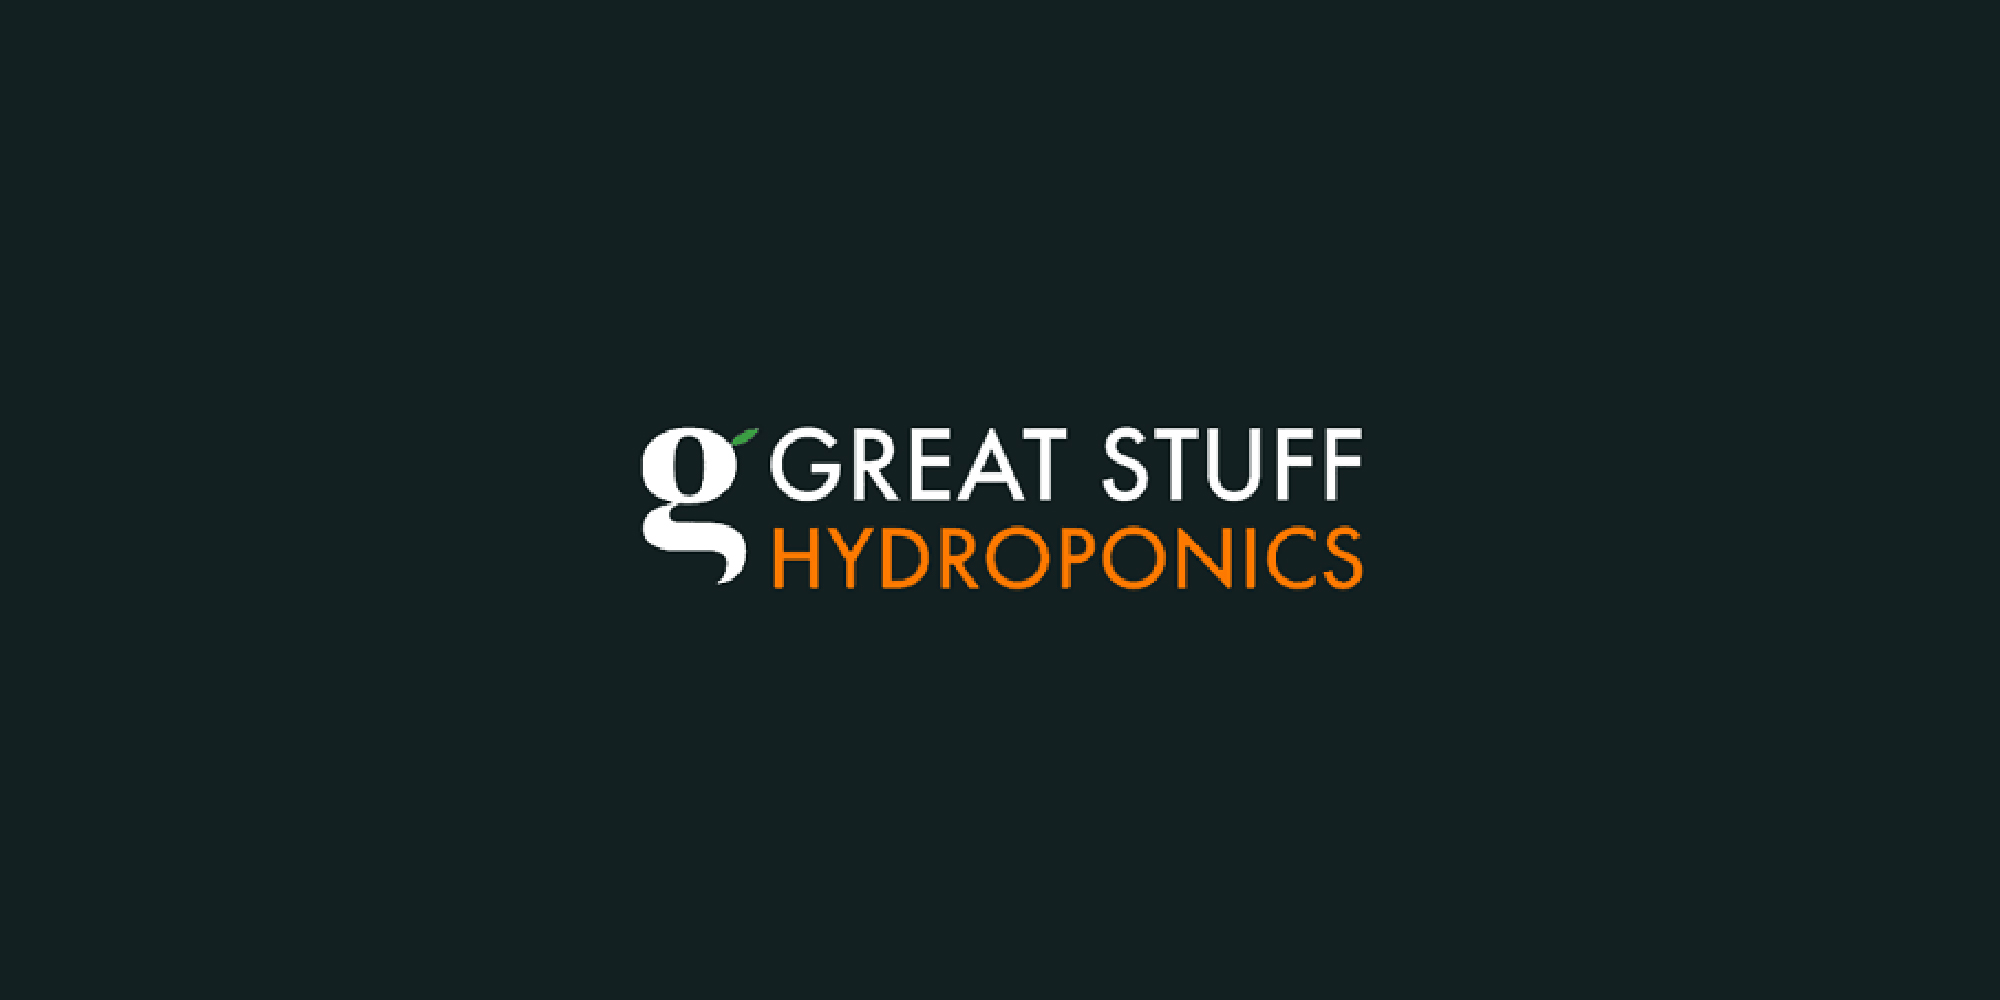 (c) Hydroponics-hydroponics.com